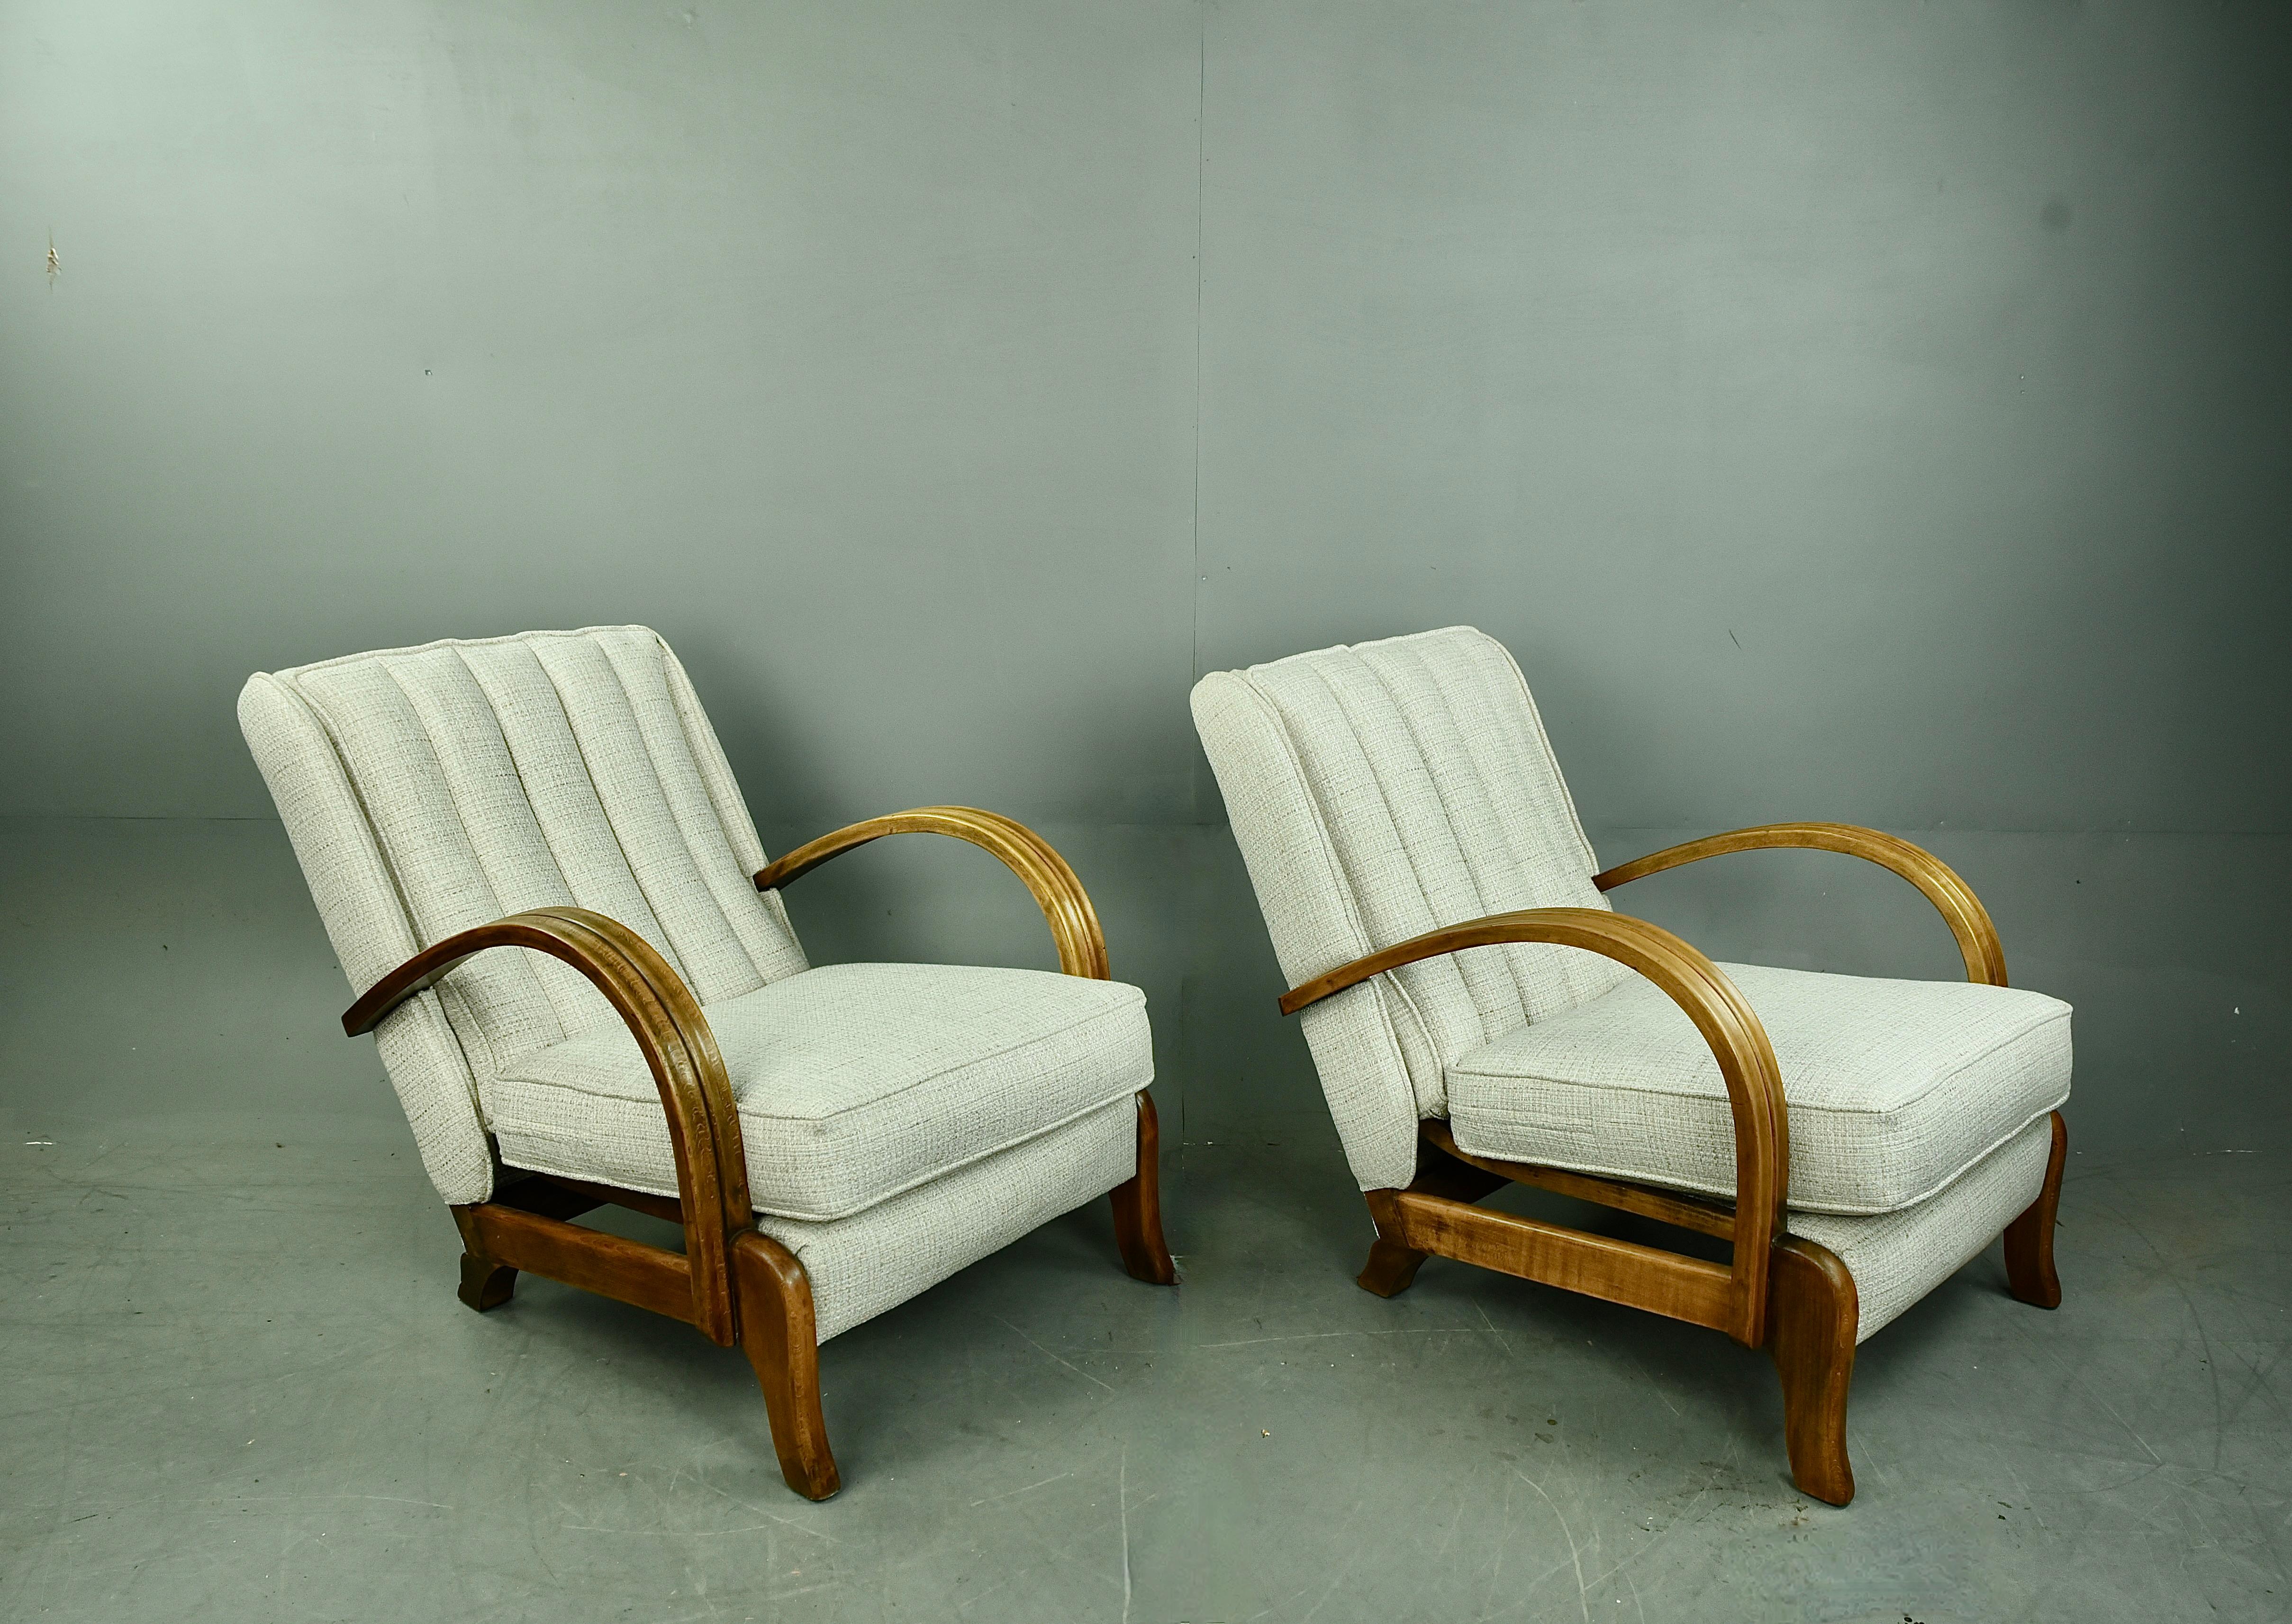 Sehr seltenes Paar Faulenzerstühle aus der Mitte des Jahrhunderts von M.B & S Ltd Leigh on sea Essex .
Die Stühle sind einzigartig in der Konstruktion mit einer schwimmenden Federkonstruktion an der Basis und Rückenlehnen, sie haben wunderbar